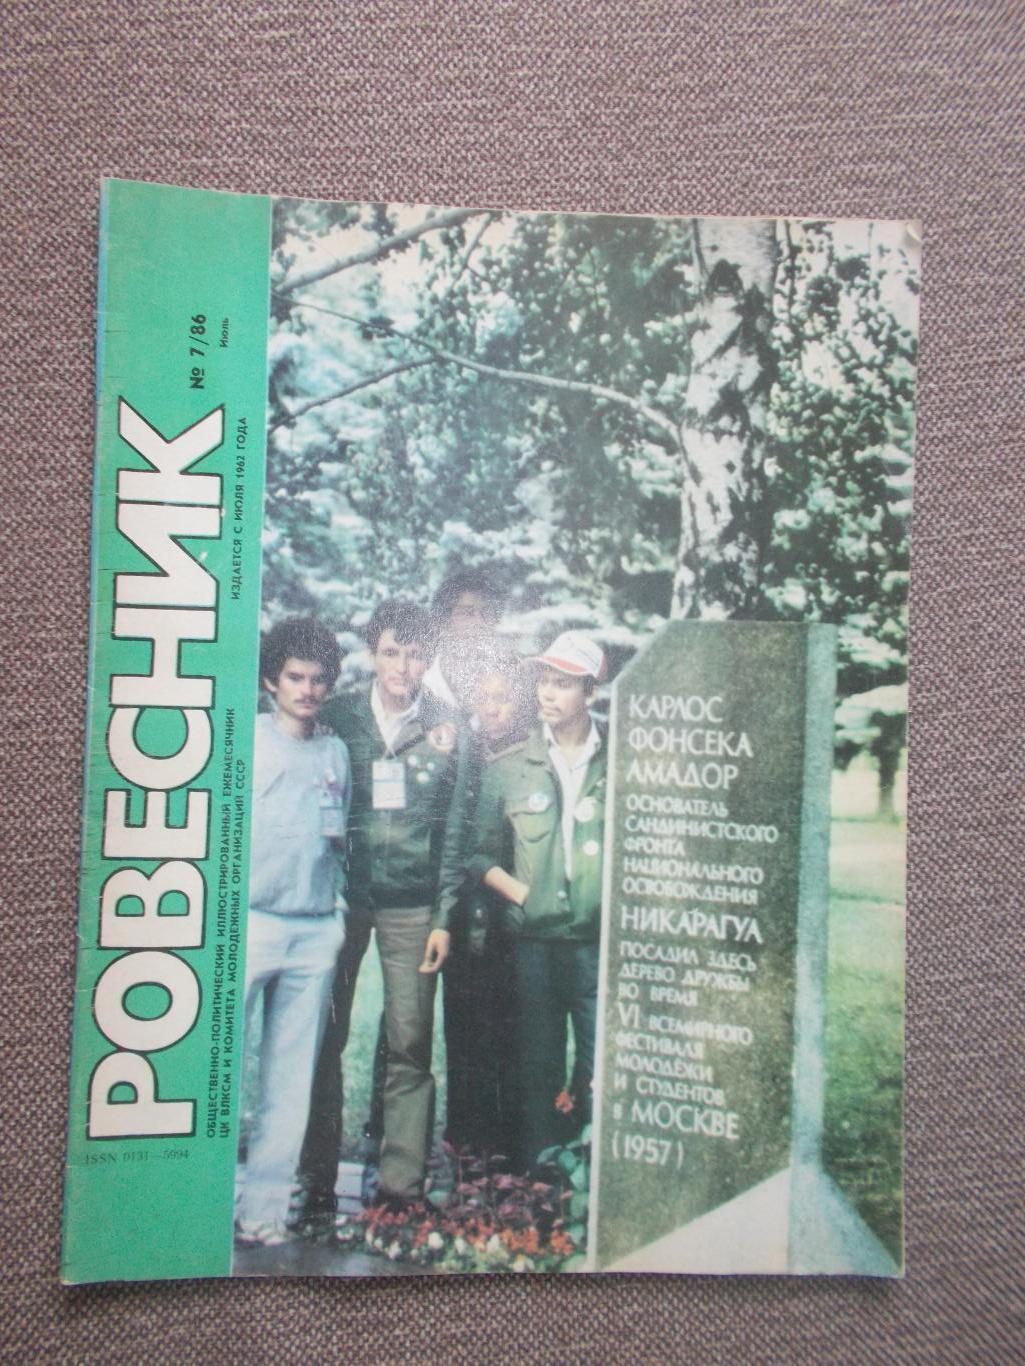 Журнал СССР :Ровесник№ 7 (июль) 1986 г. (Молодежный музыкальный журнал)